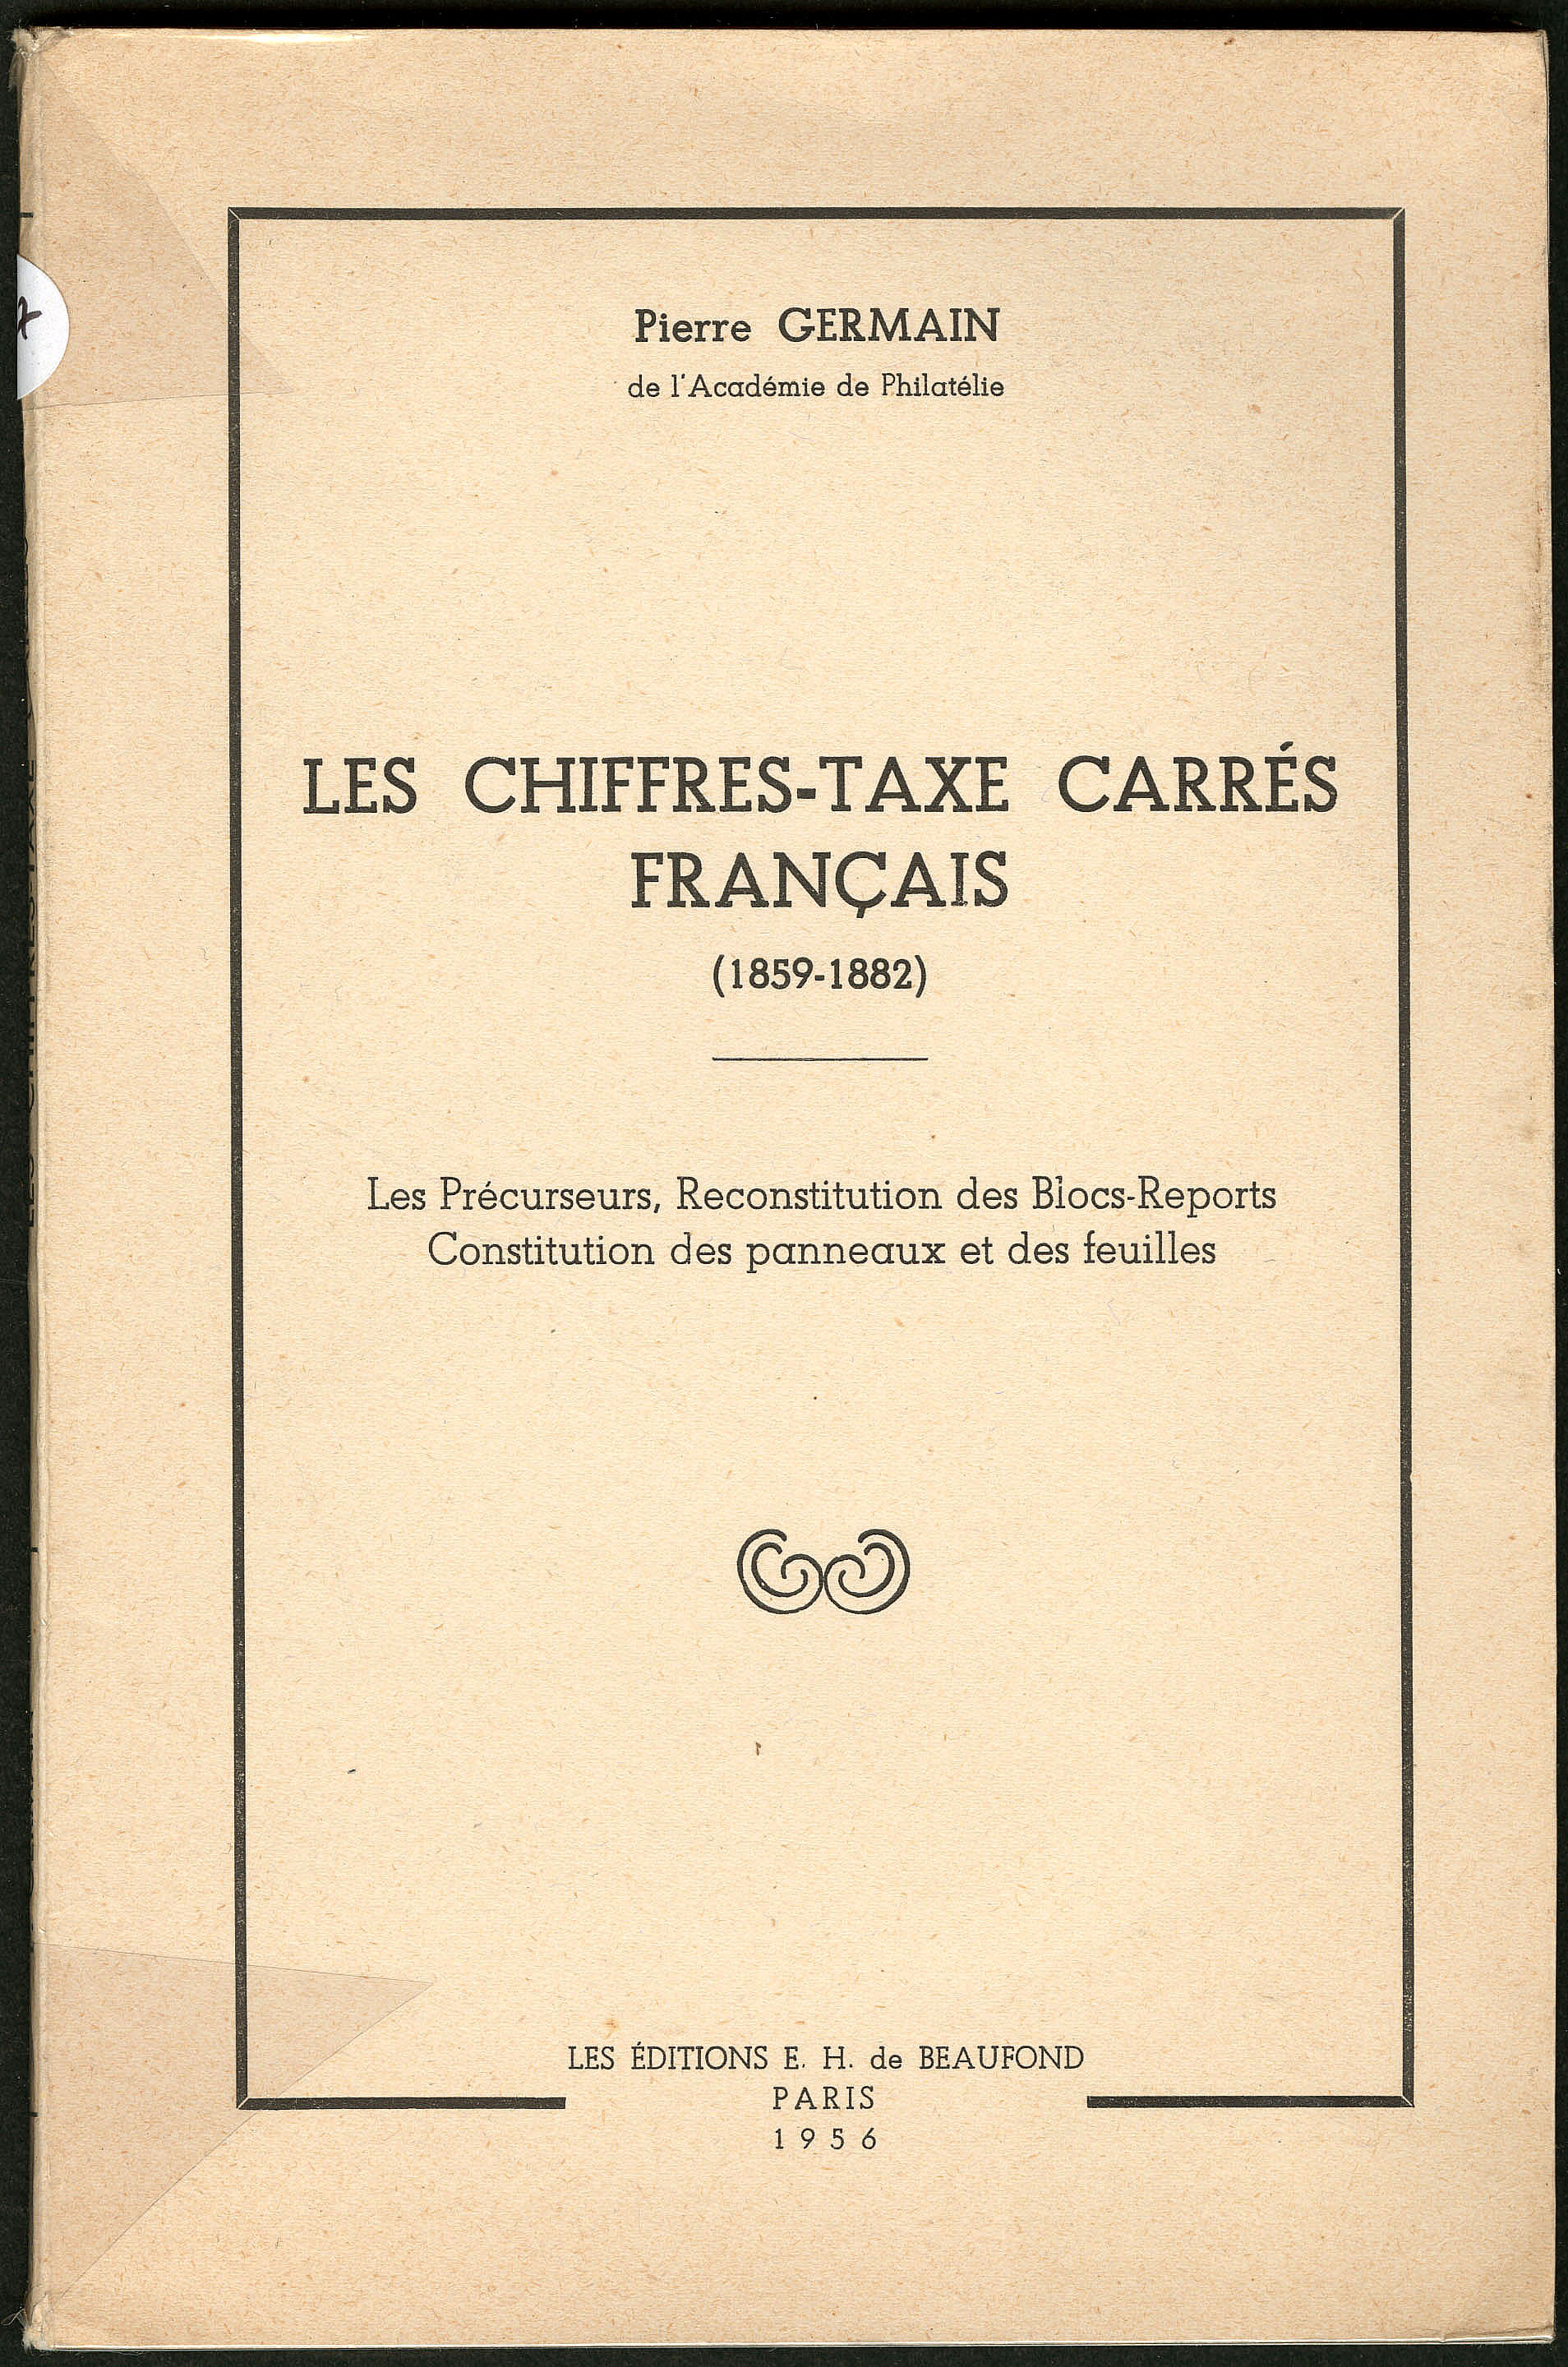 CARNETS DE TIMBRES-POSTE FRANCE ET COLONIES - A. TEISSIER - 1956.